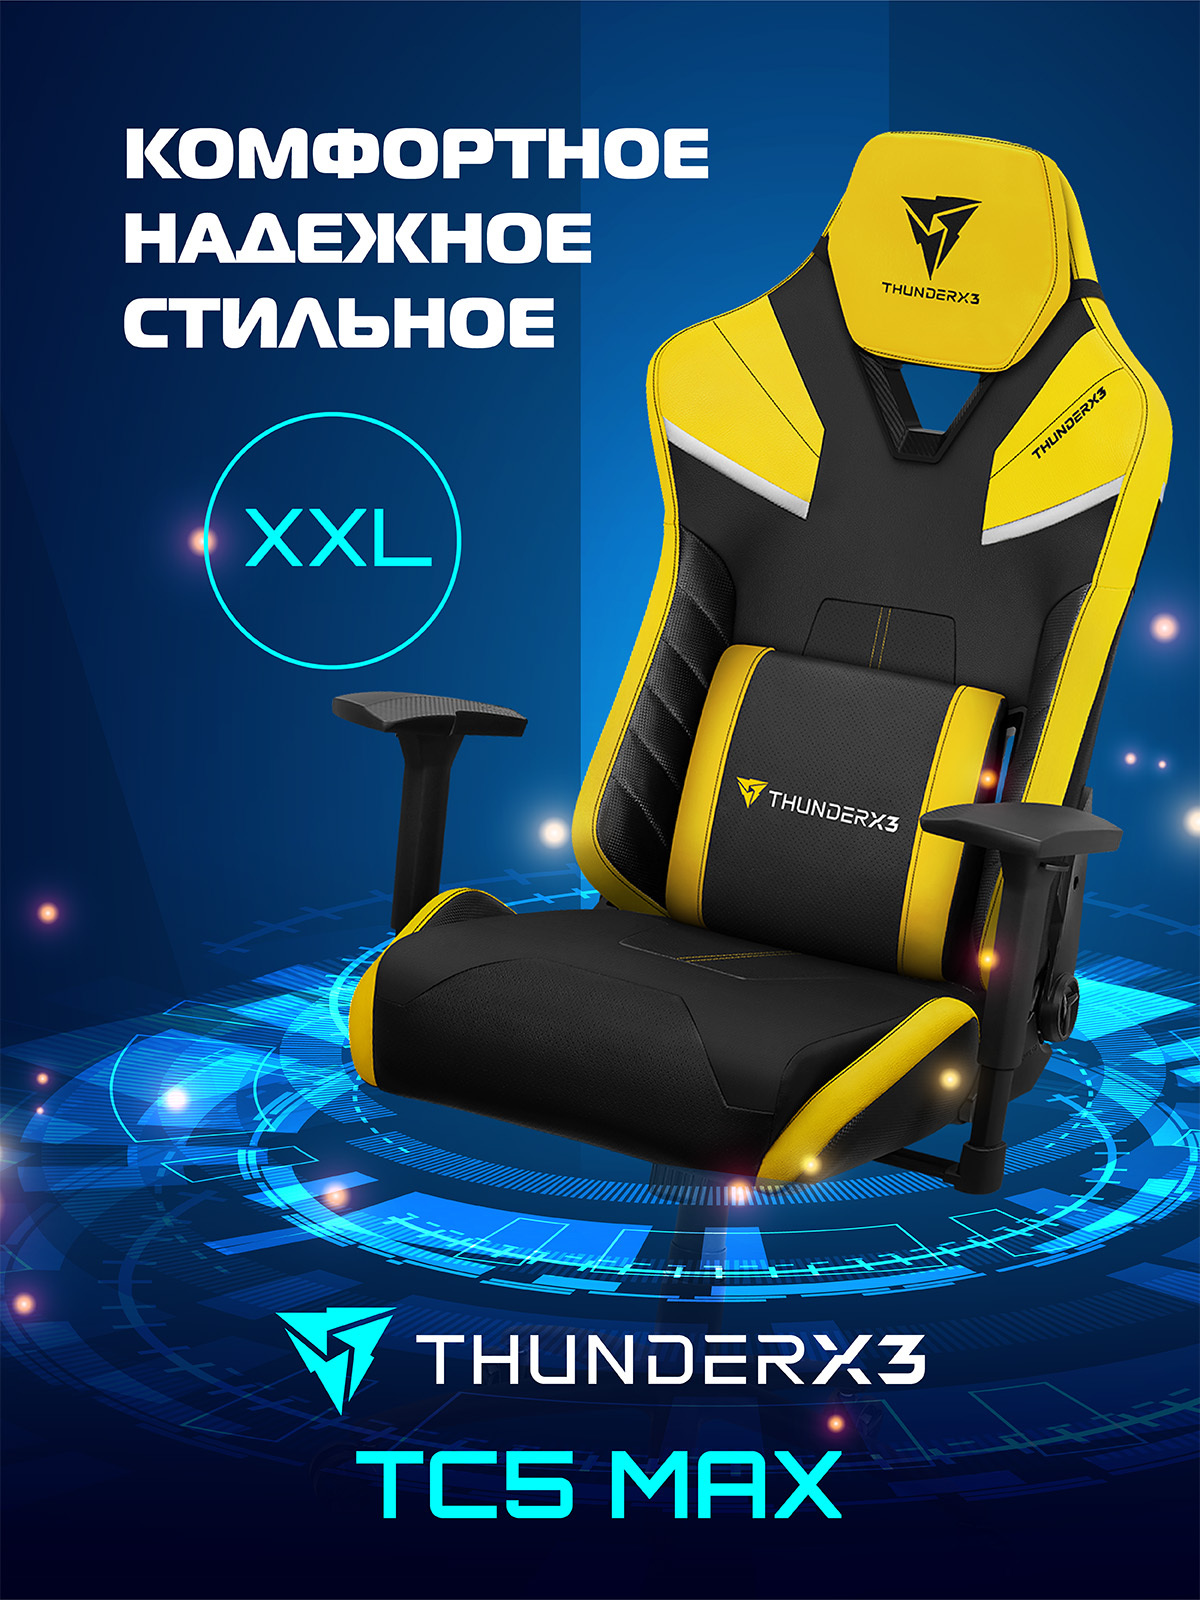 Кресло thunderx3 tc5 Max